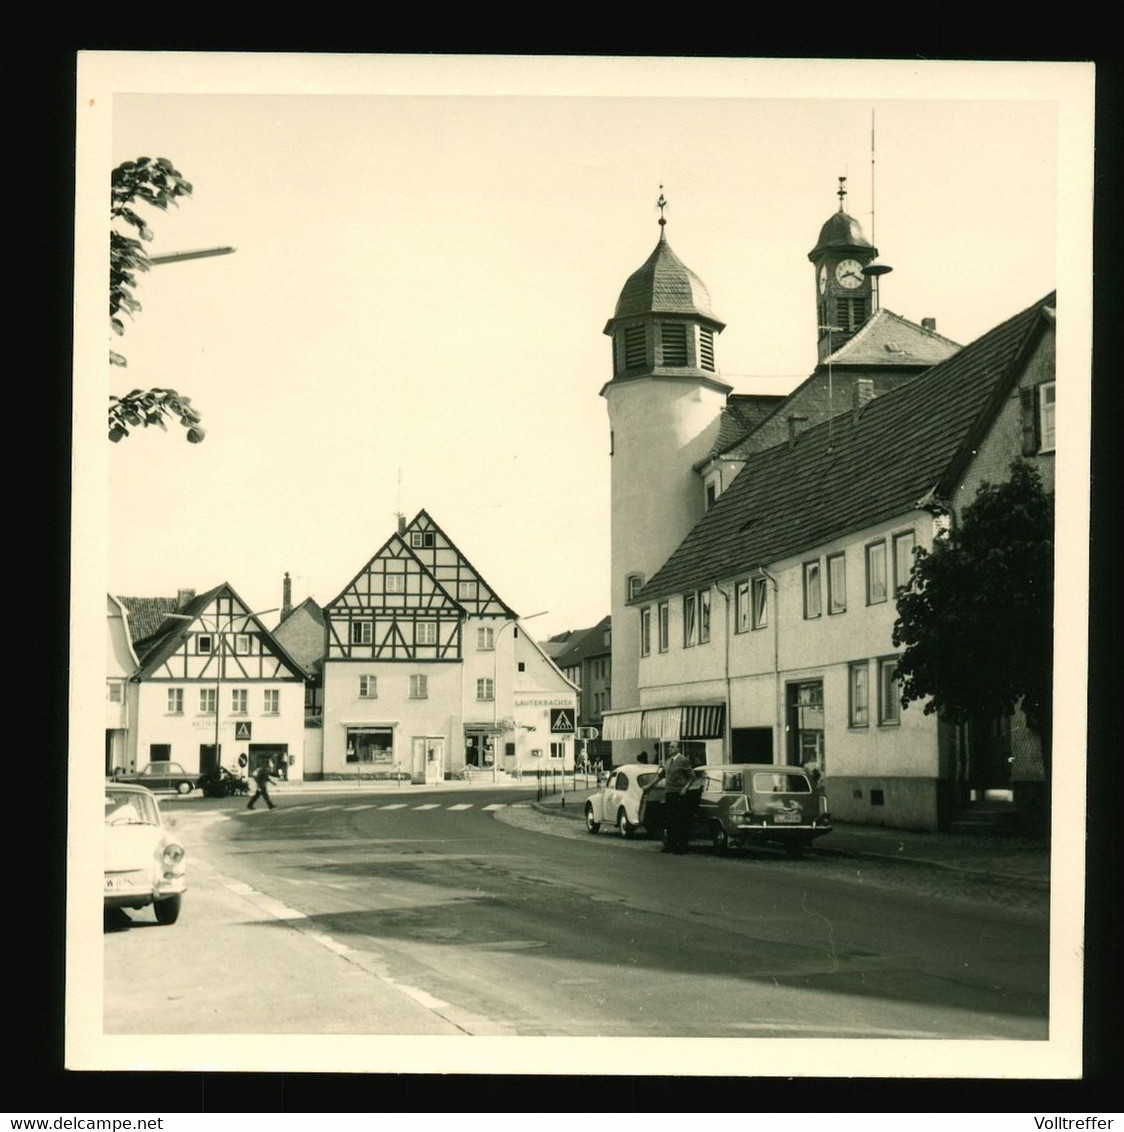 Orig. Foto 1967 Ortspartie Schlüchtern Hessen, Spar Lebensmittelhandel, Geschäft Lauterbacher, Kirche, Oldtimer KfZ - Schluechtern